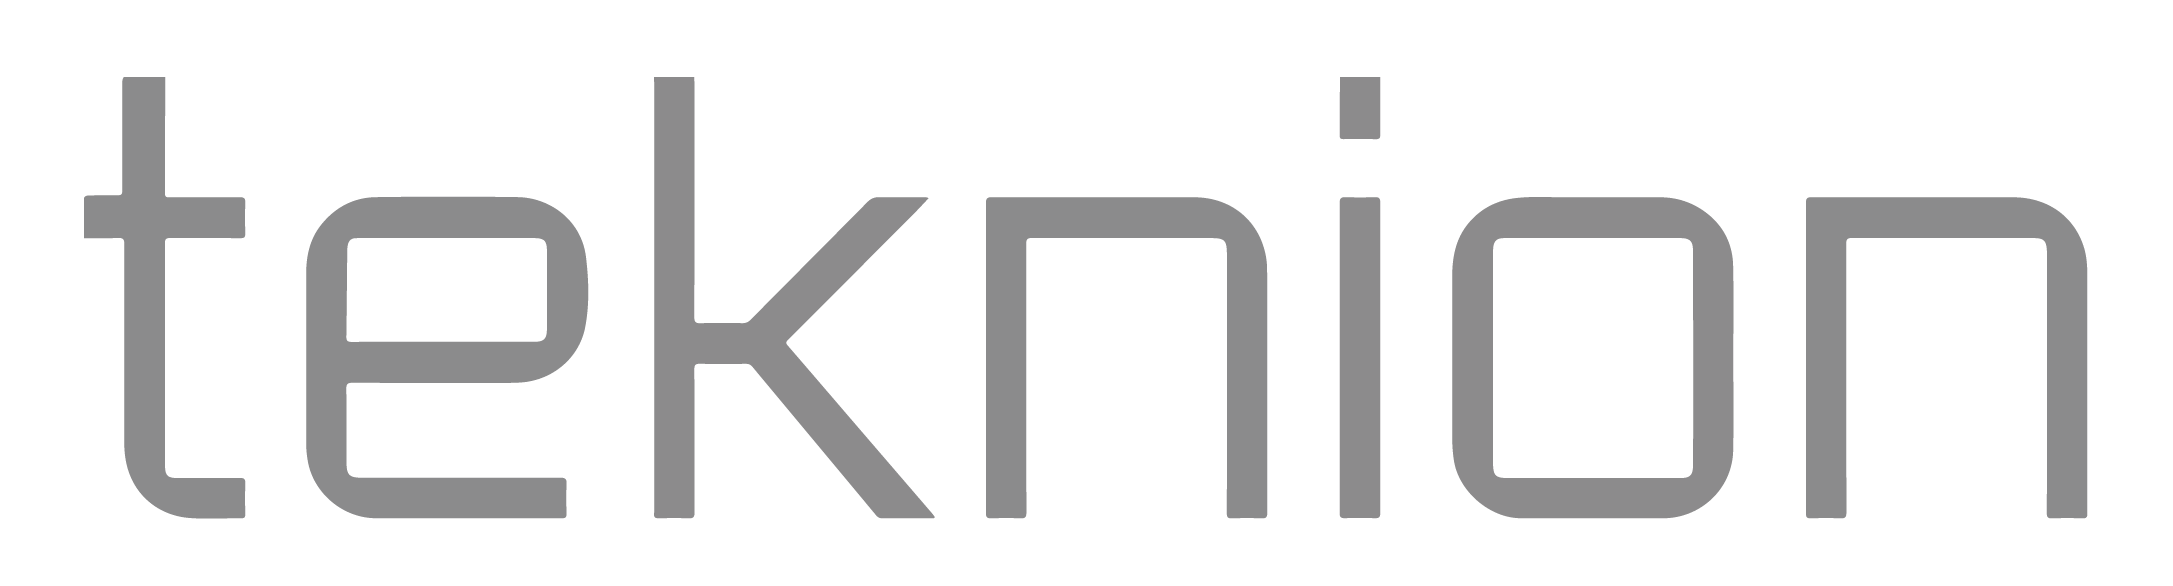 teknion-logo-new-gray